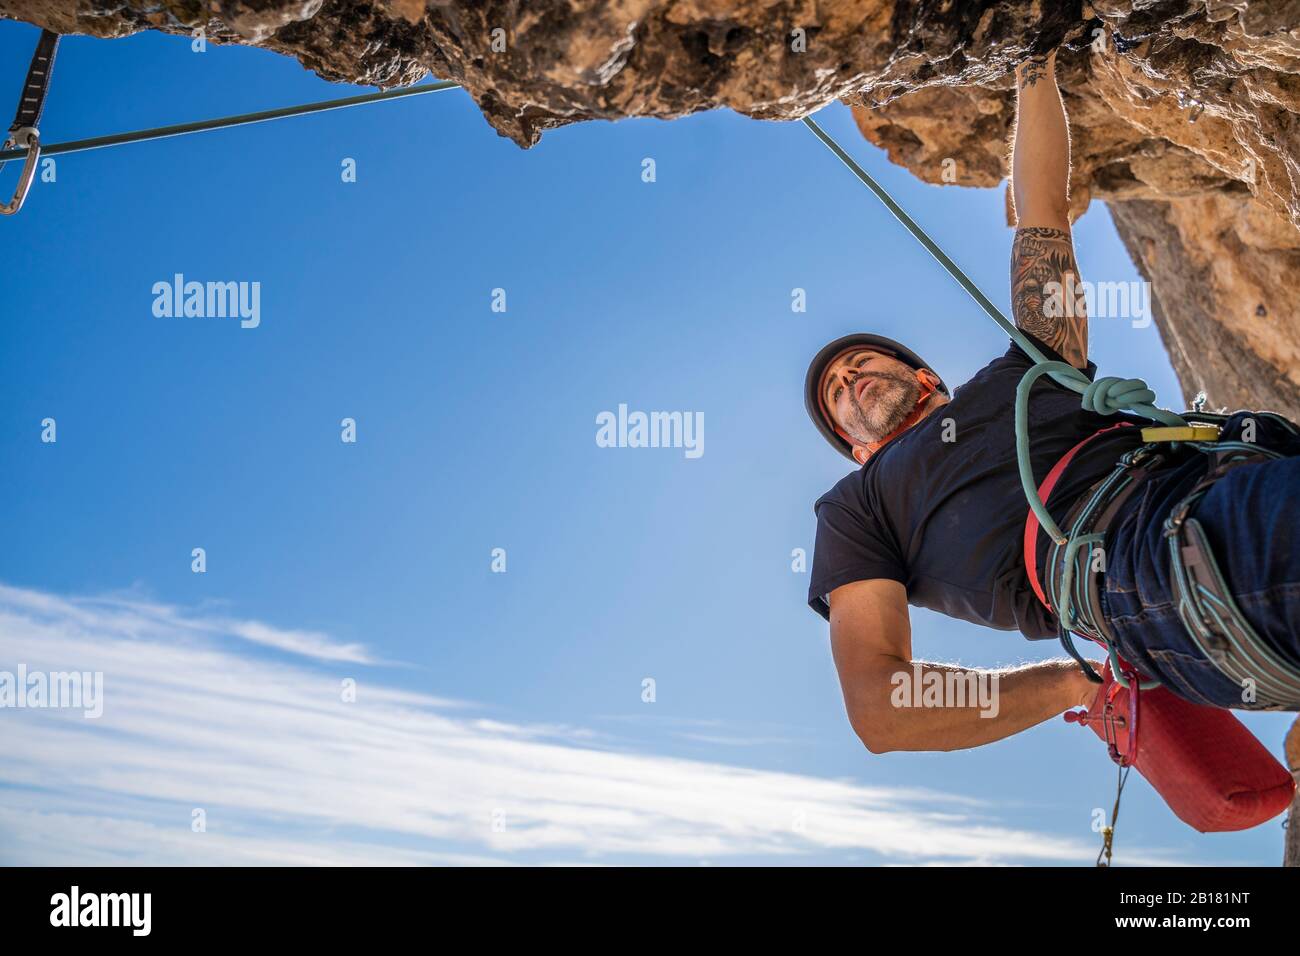 Man climbing at rock face Stock Photo